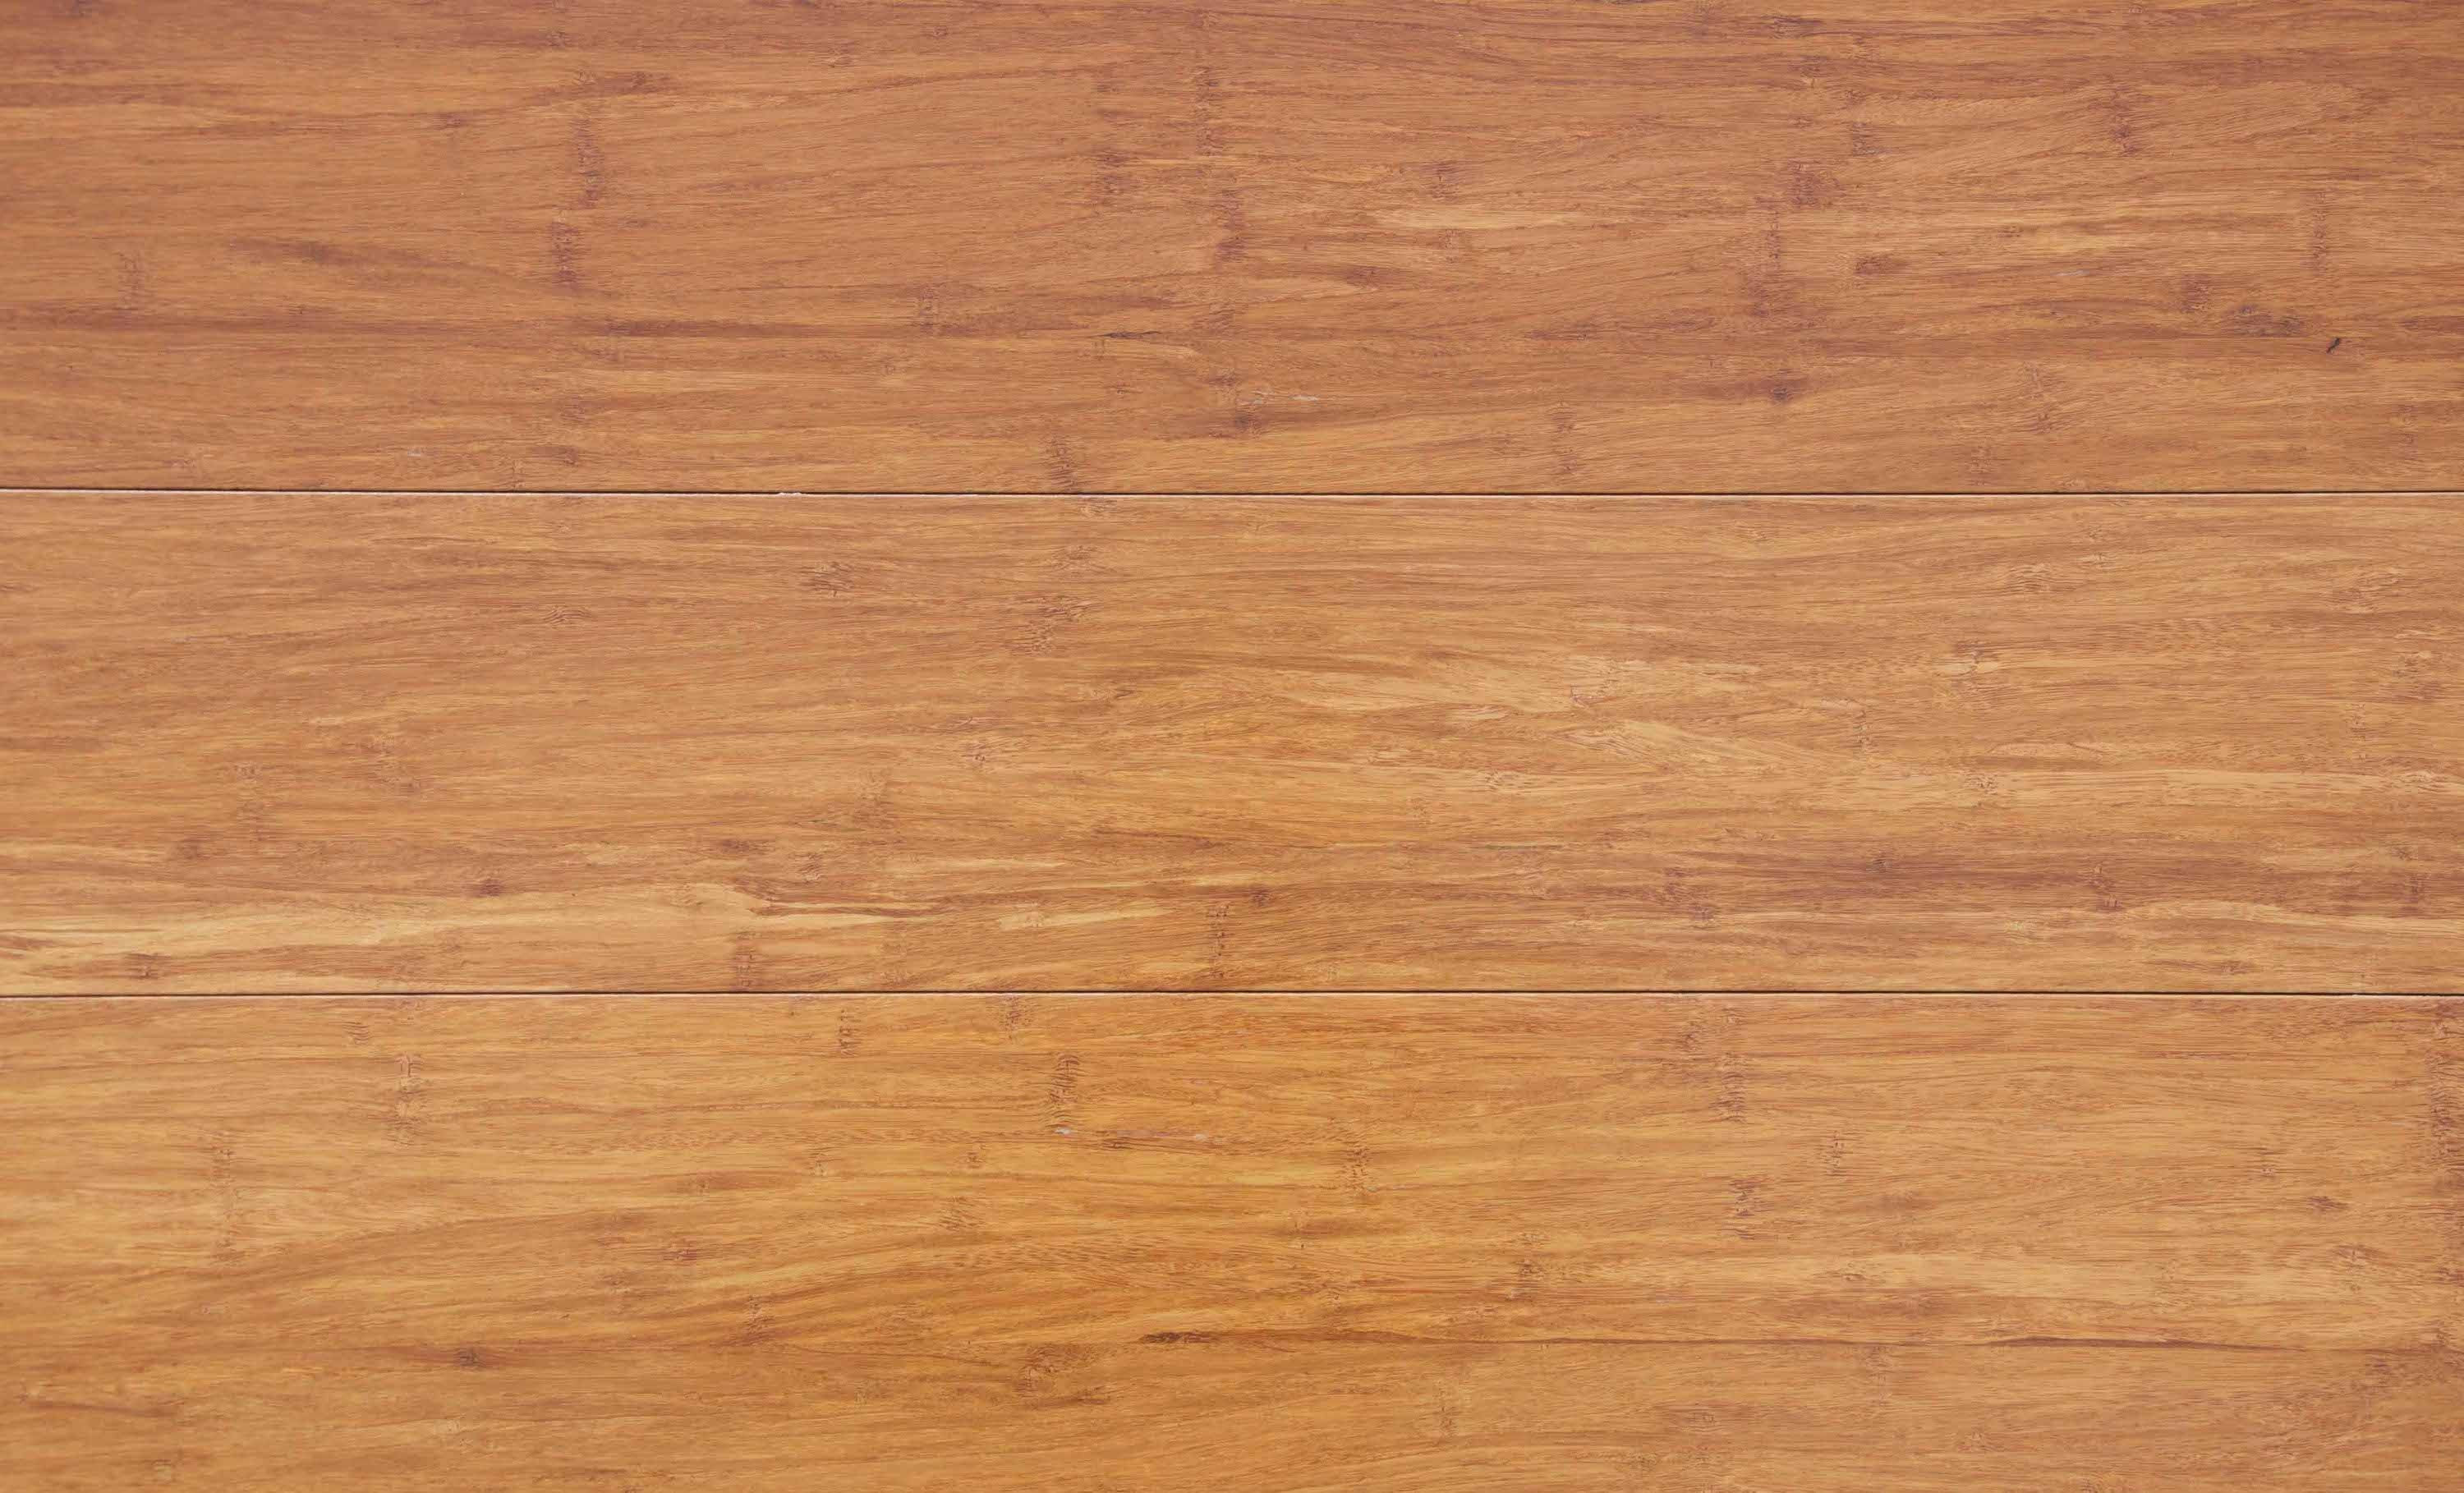 23 Stylish 3 4 Unfinished Engineered Hardwood Flooring 2022 free download 3 4 unfinished engineered hardwood flooring of 37 best unfinished bamboo floor stock flooring design ideas with regard to bamboo laminate flooring rhino style moyen wood effect vinyl floor